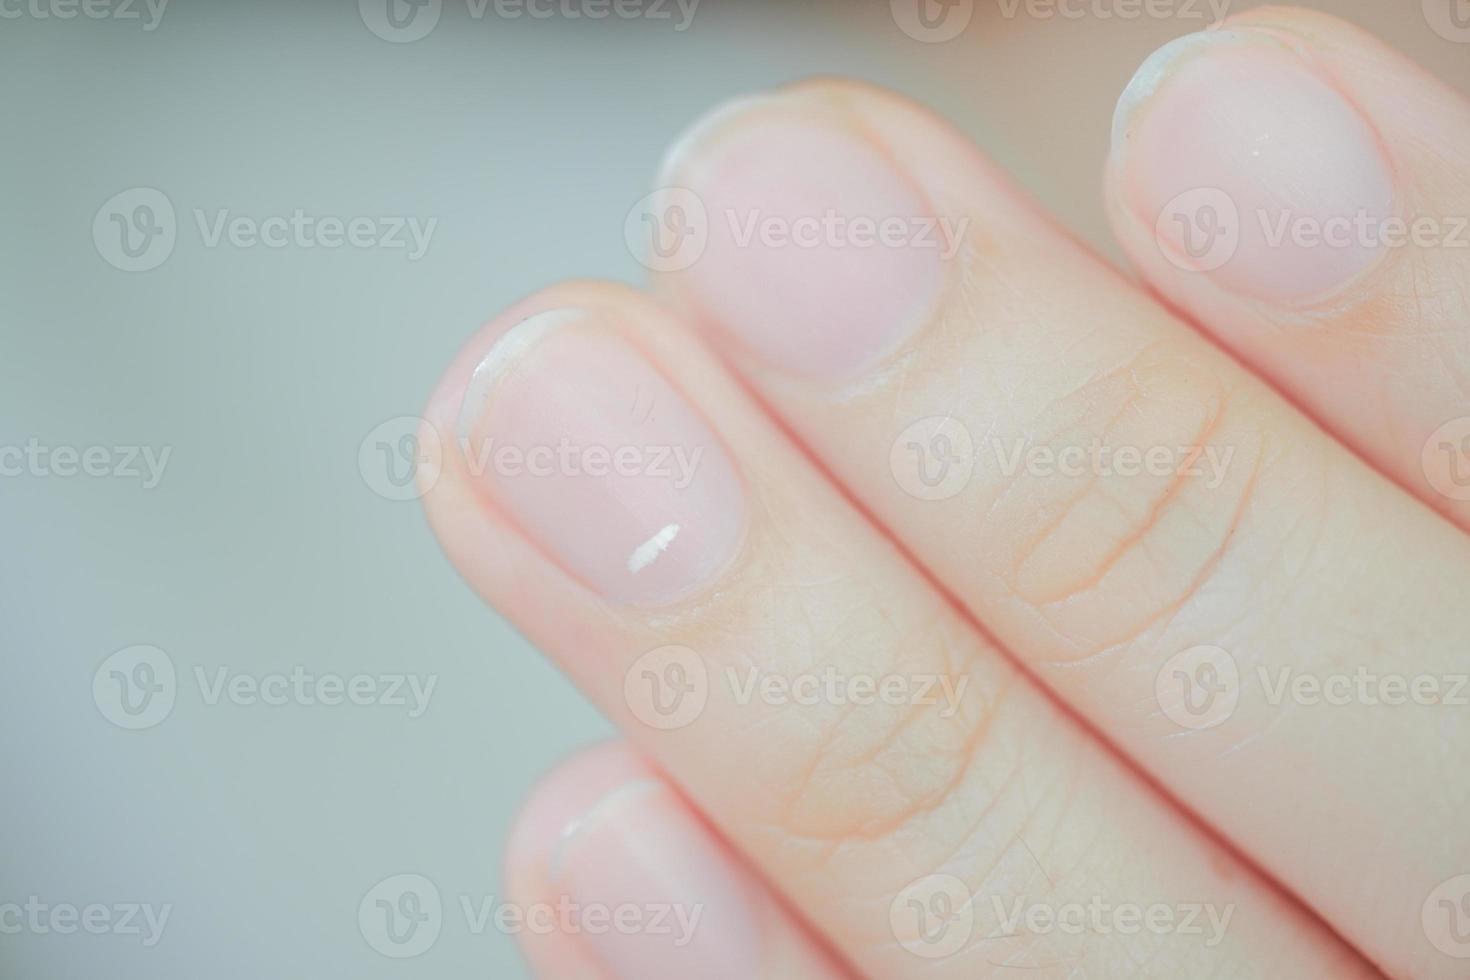 Weiße Flecken auf den Fingernägeln, Leukonychie genannt, weisen auf das Auftreten von Gesundheitsproblemen hin. foto